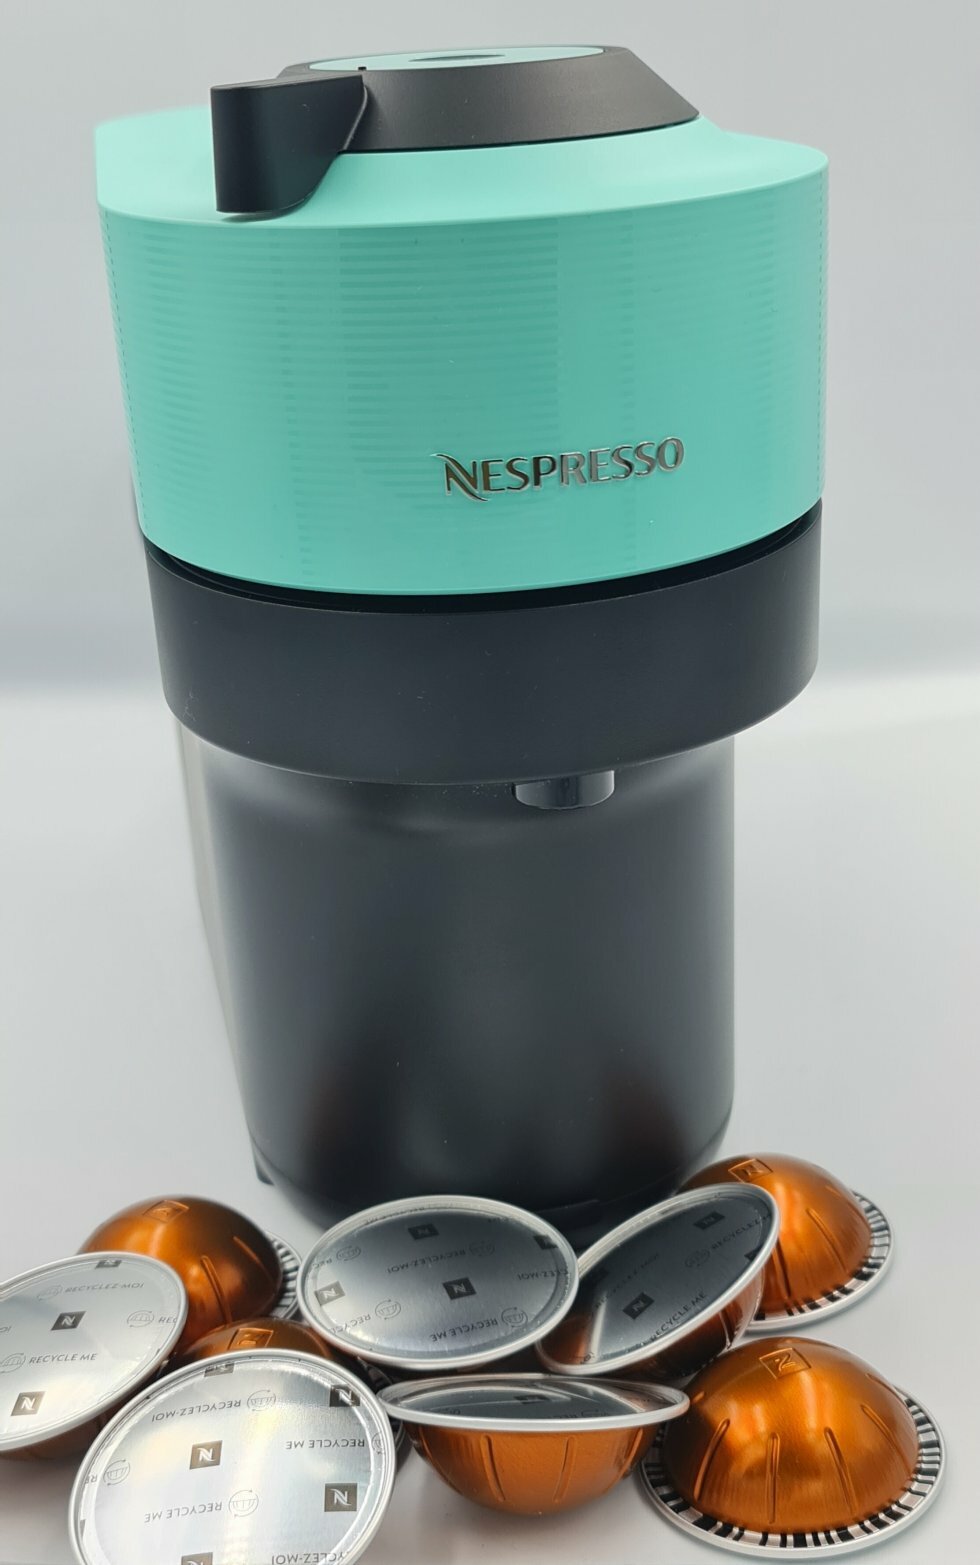 Nespresso Vertuo POP mintgrøn kaffemaskine - Test: Nespresso Vertuo POP